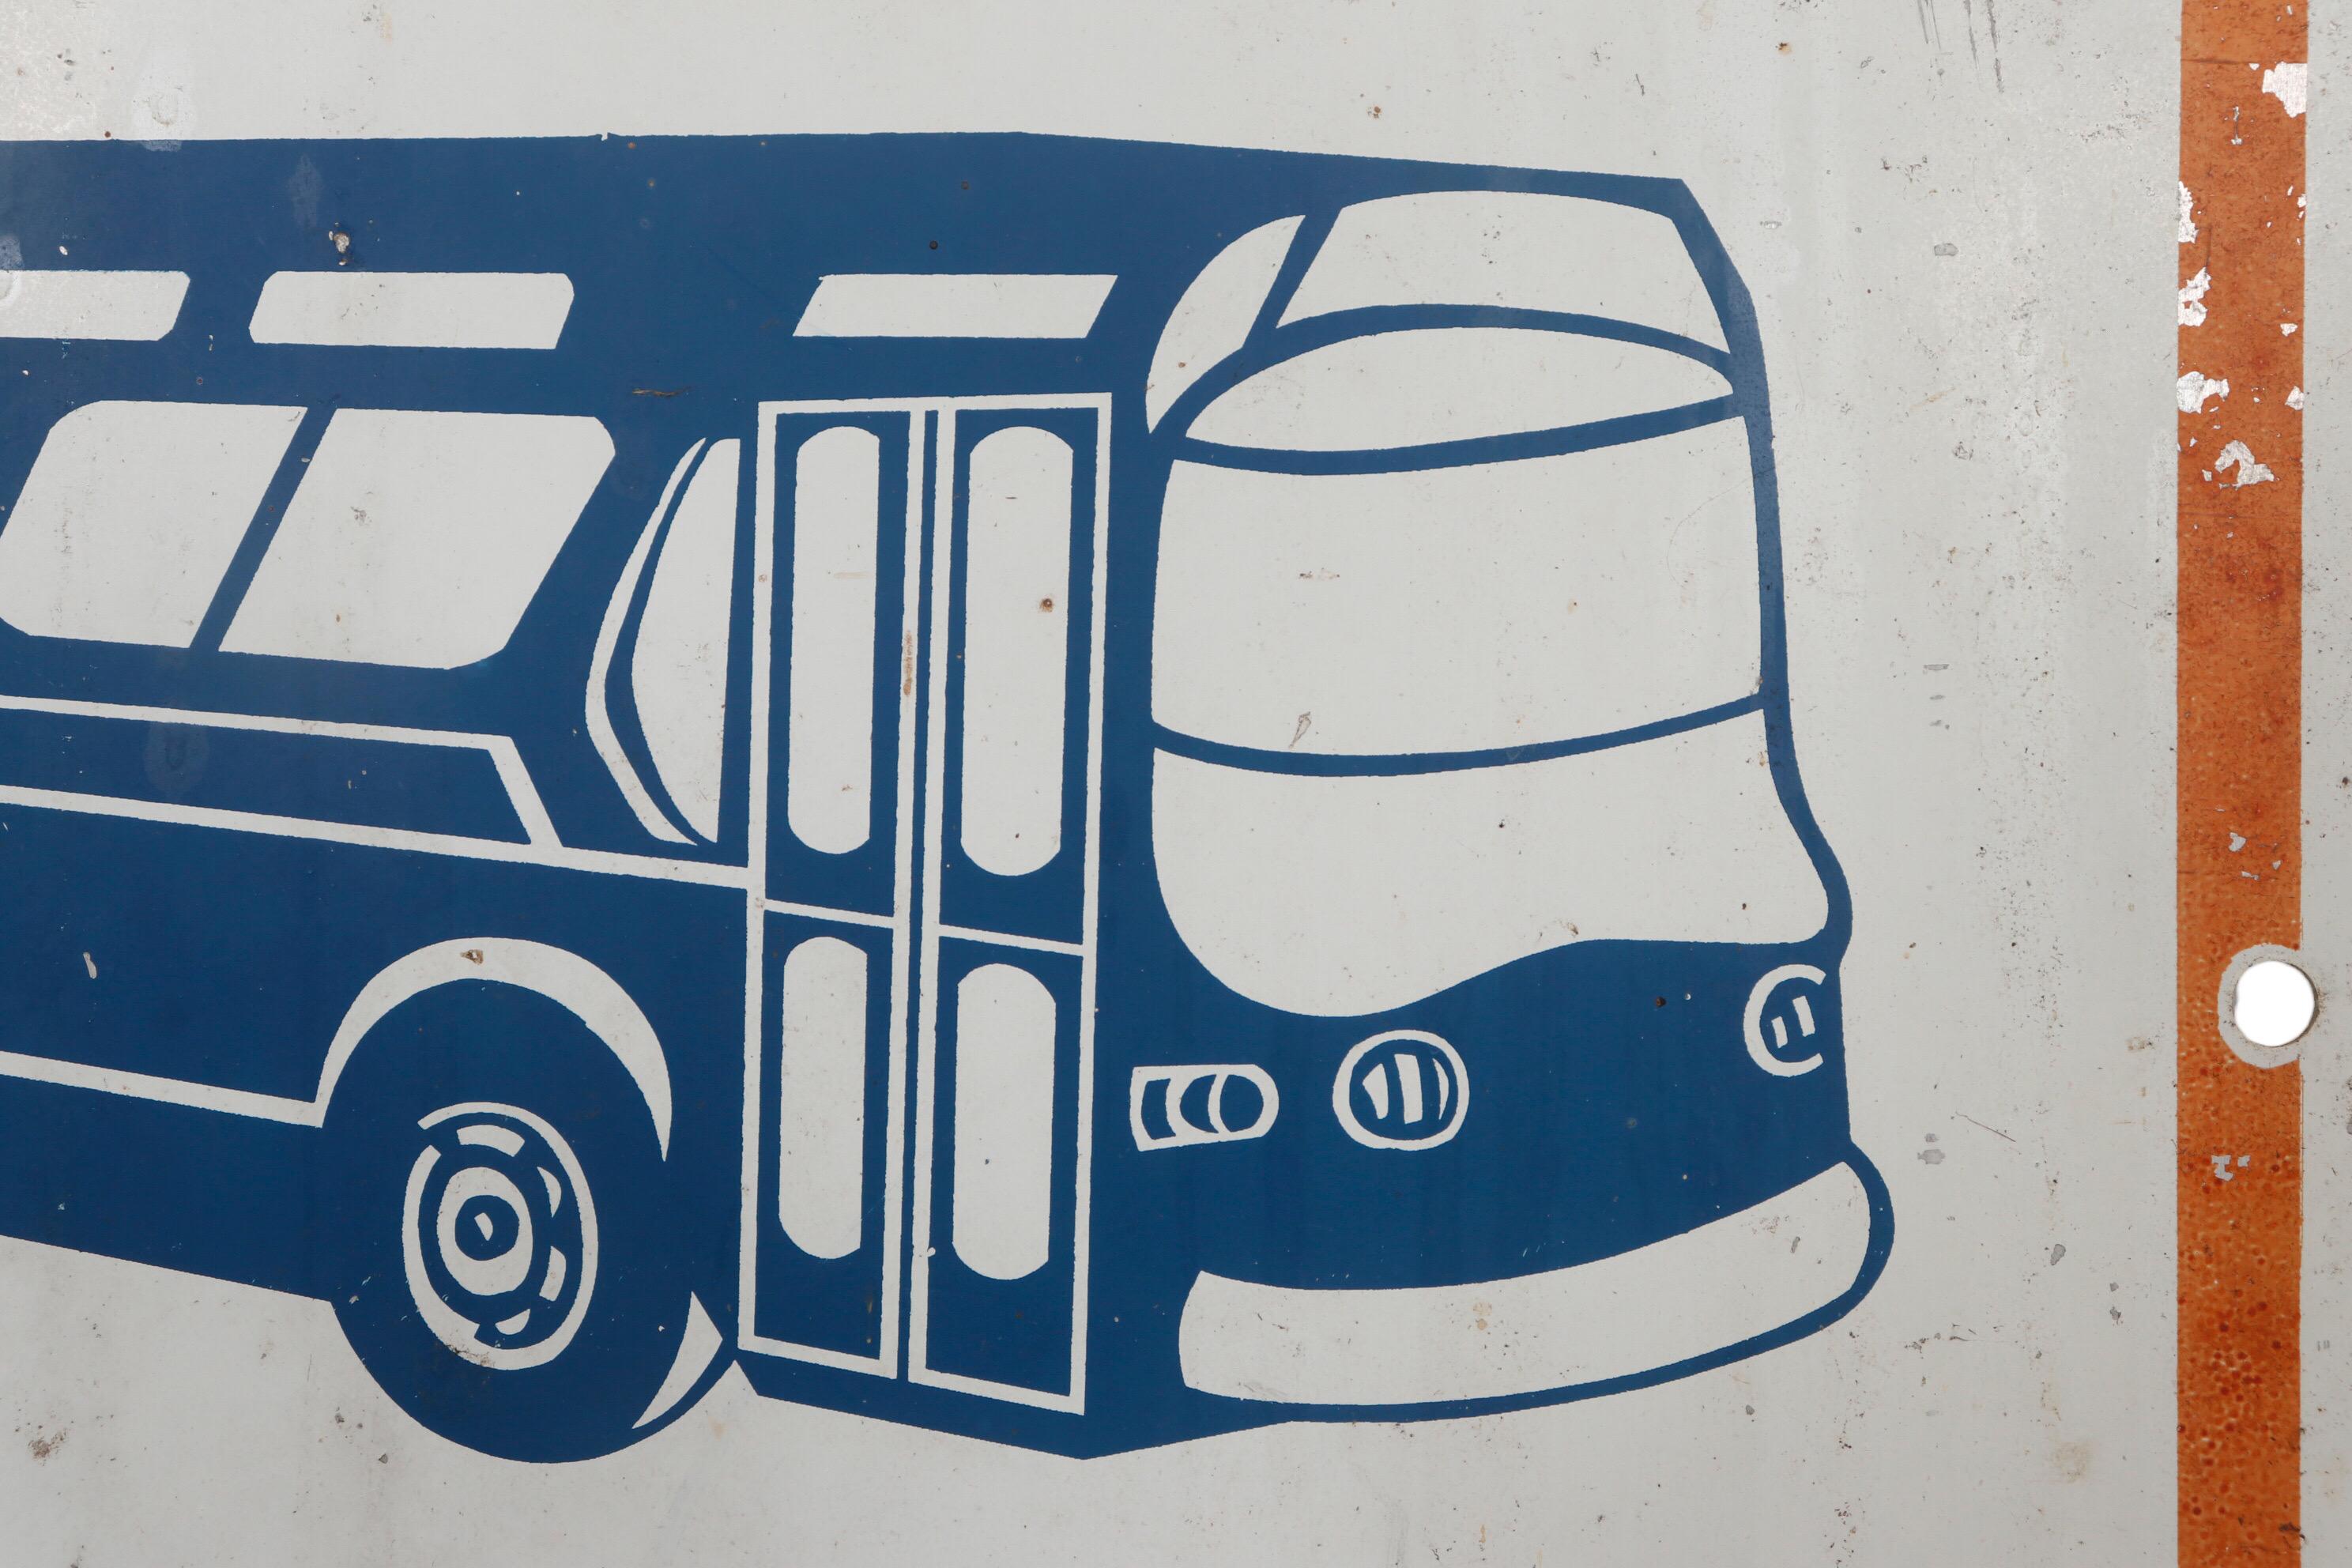 Panneau d'arrêt de bus new-yorkais des années 1970 en métal. Un bus art déco stylisé en bleu est placé dans un rectangle blanc au-dessus des mots 